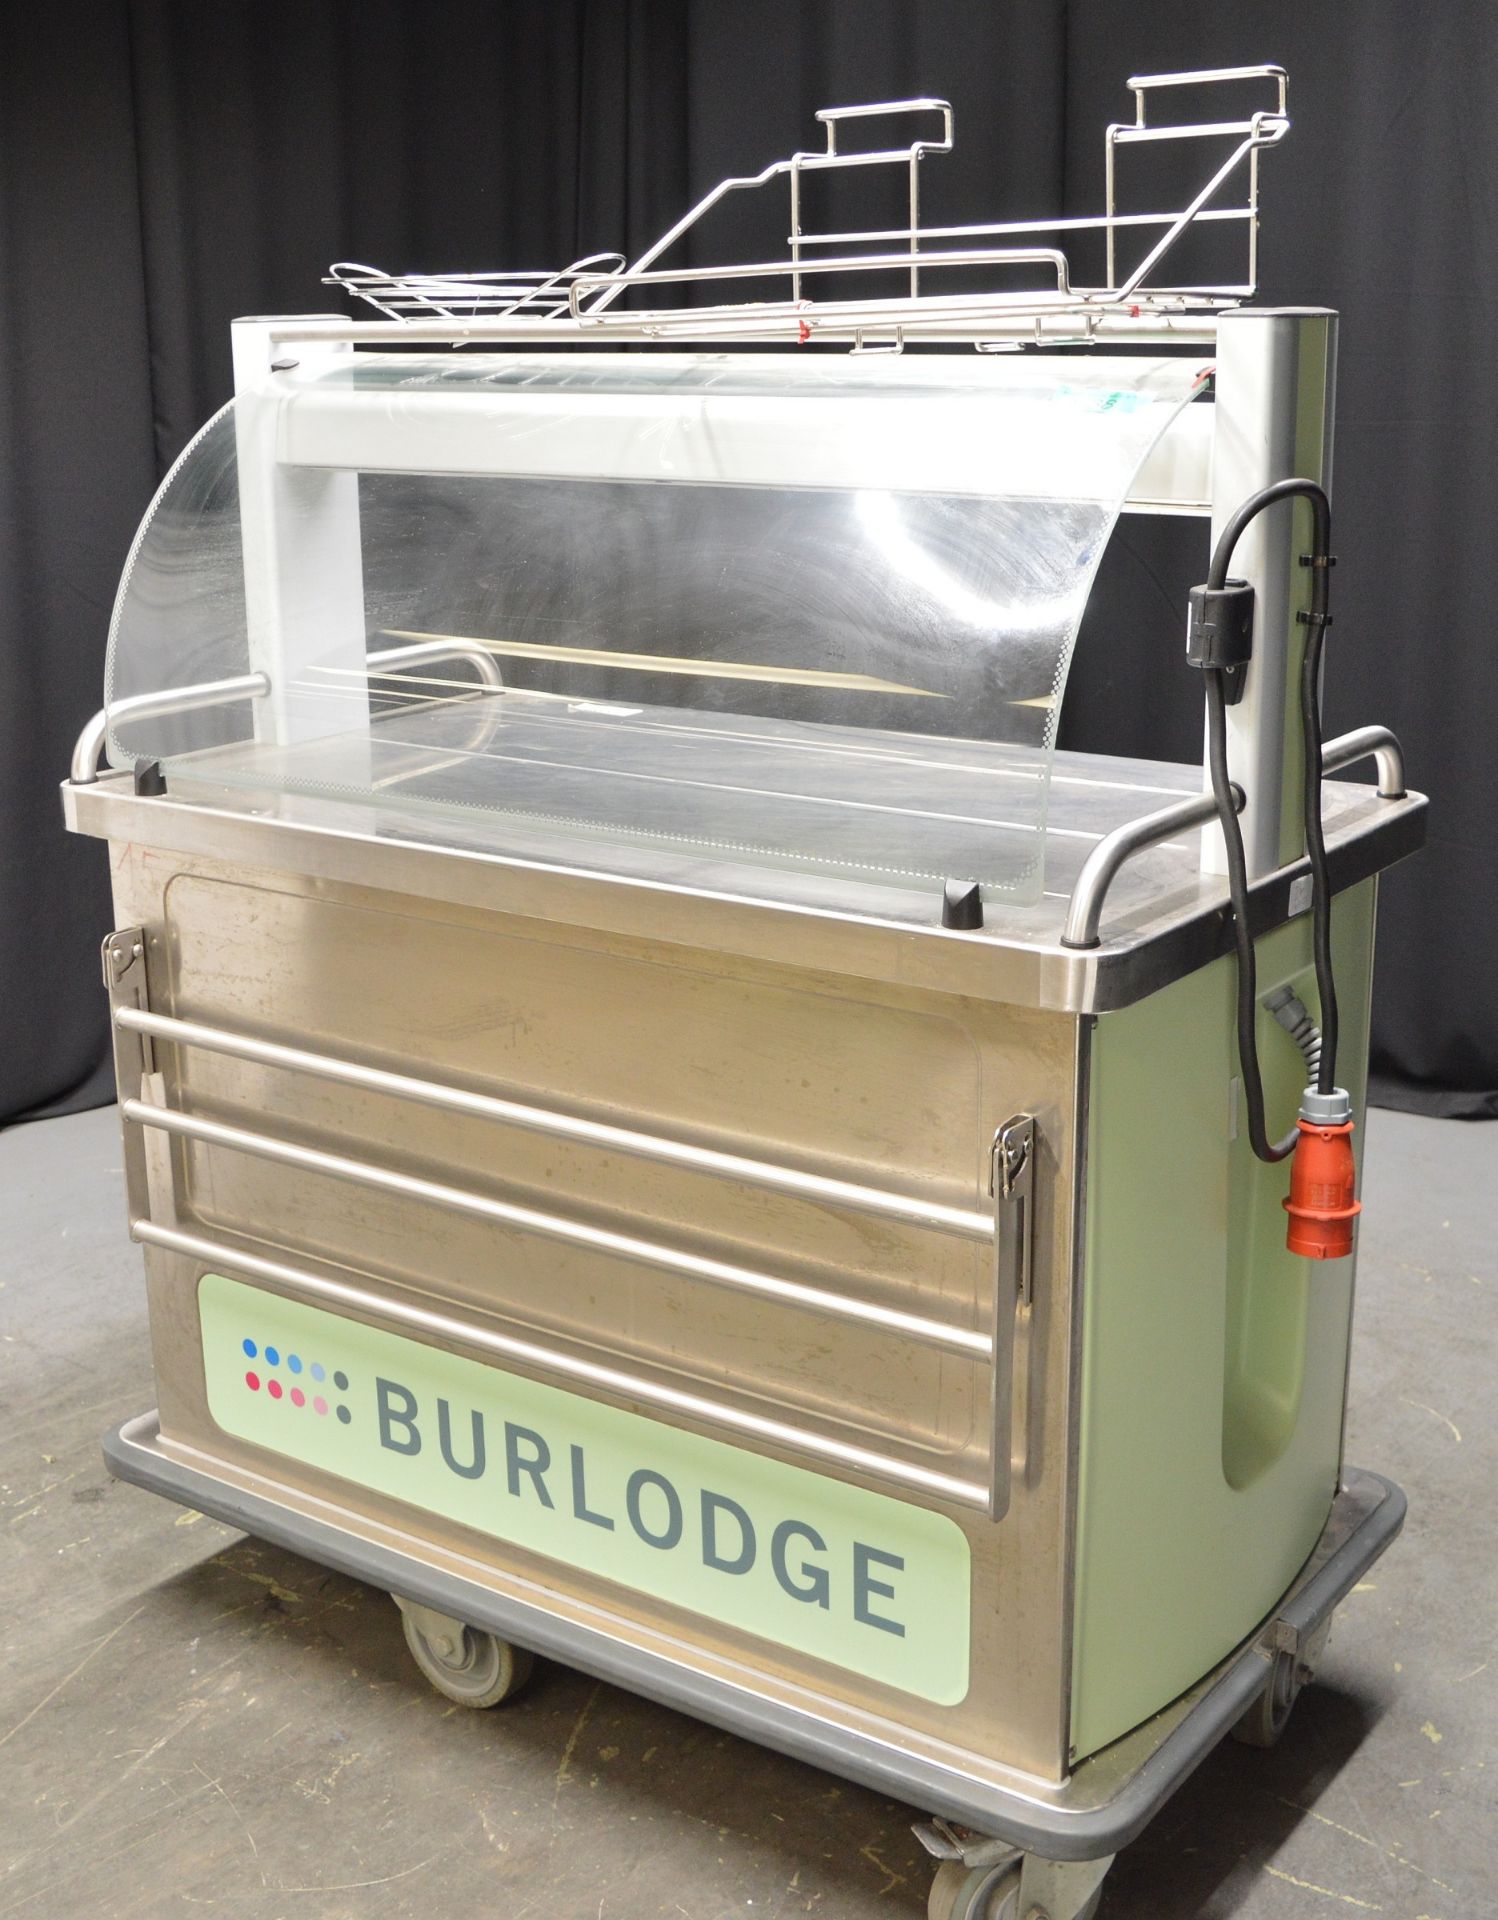 Burlodge Multigen 2 Multi Portion Hosting Cart - Image 4 of 11